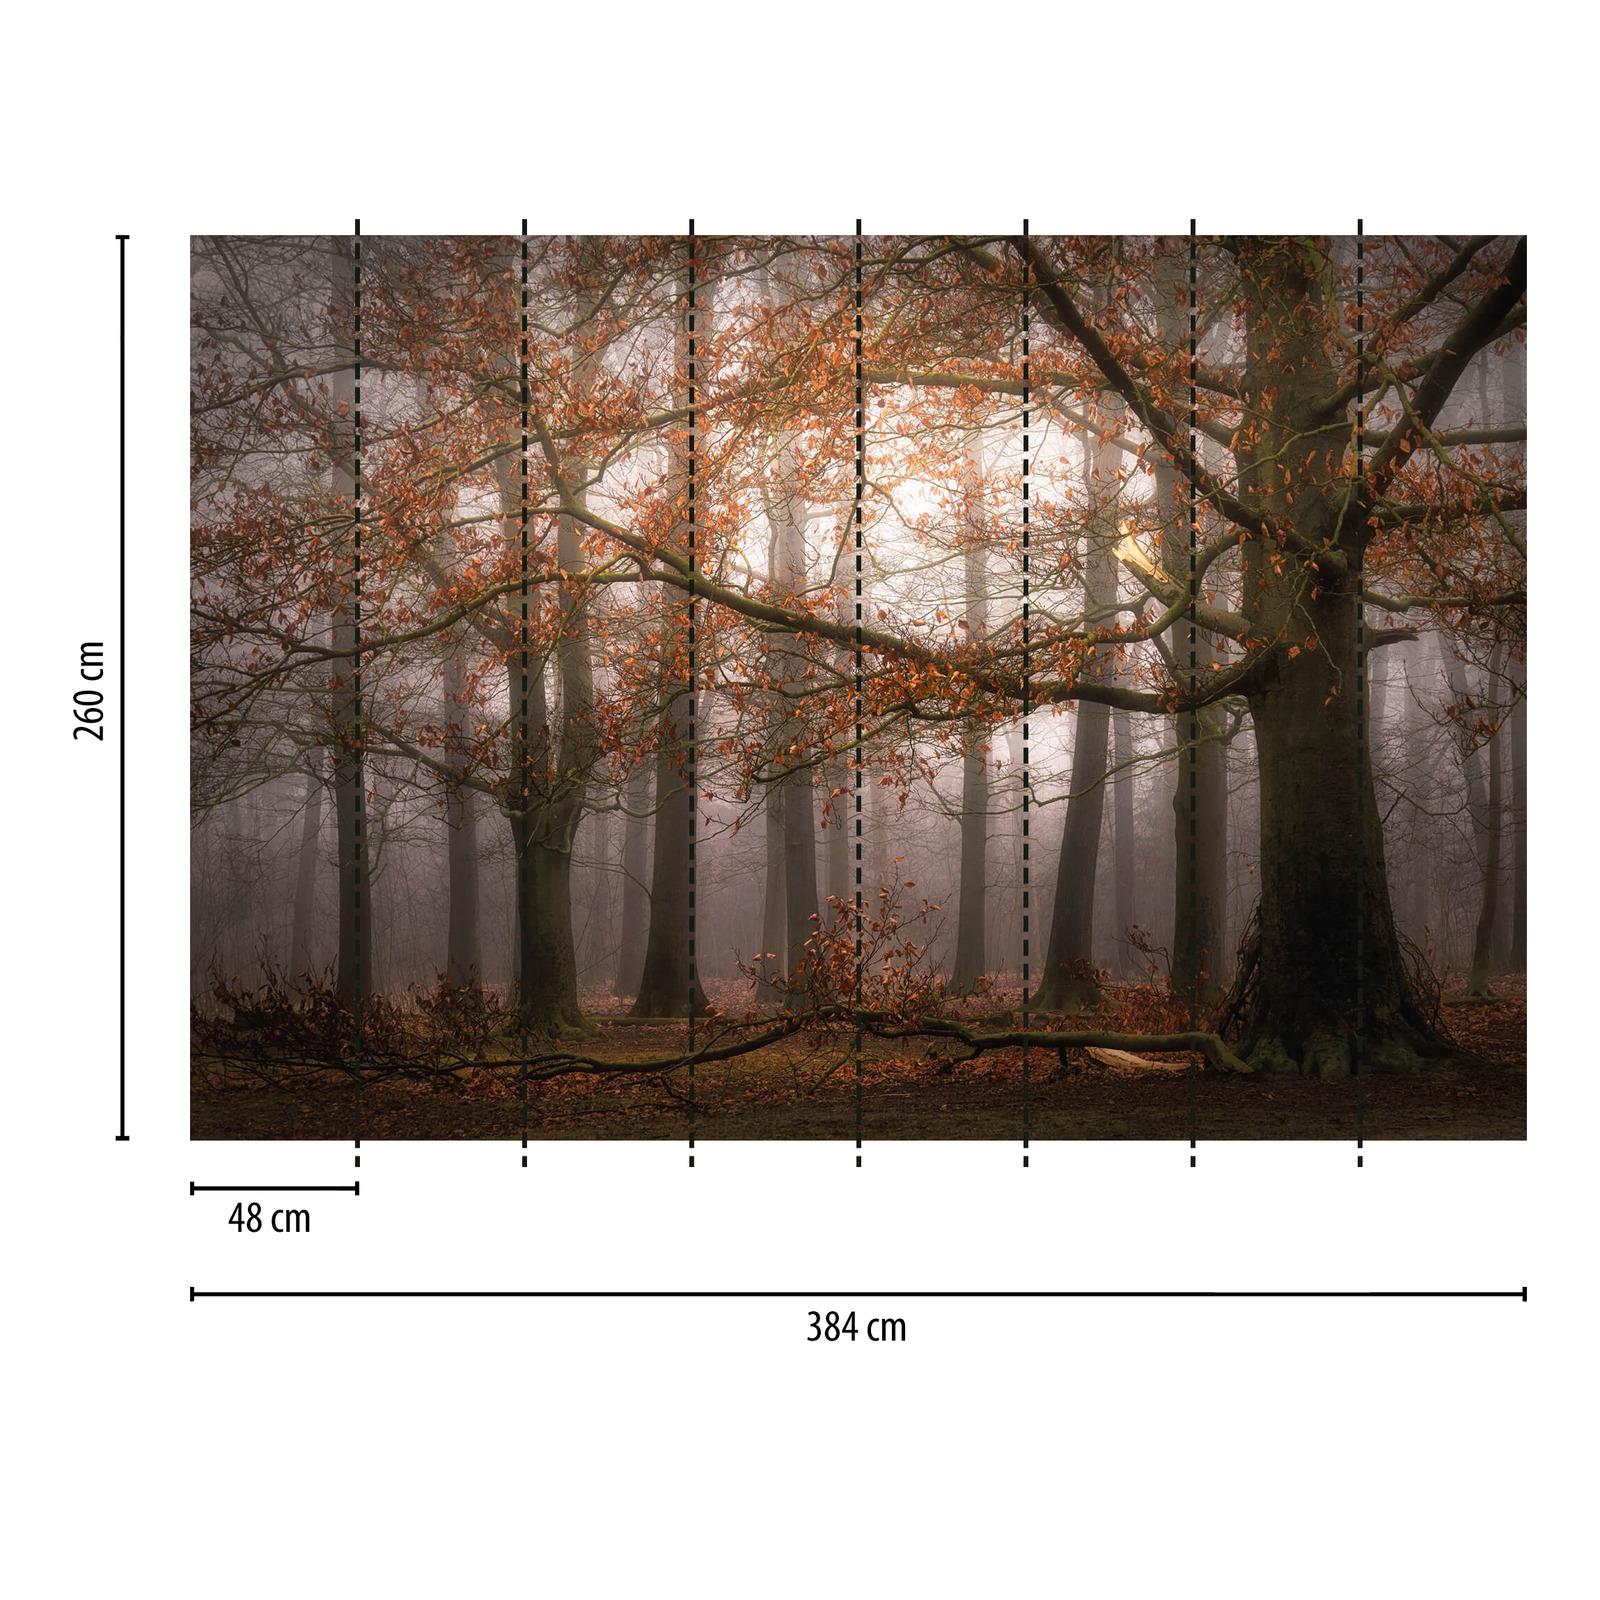             Fototapete Wald im Herbst – Braun, Orange
        